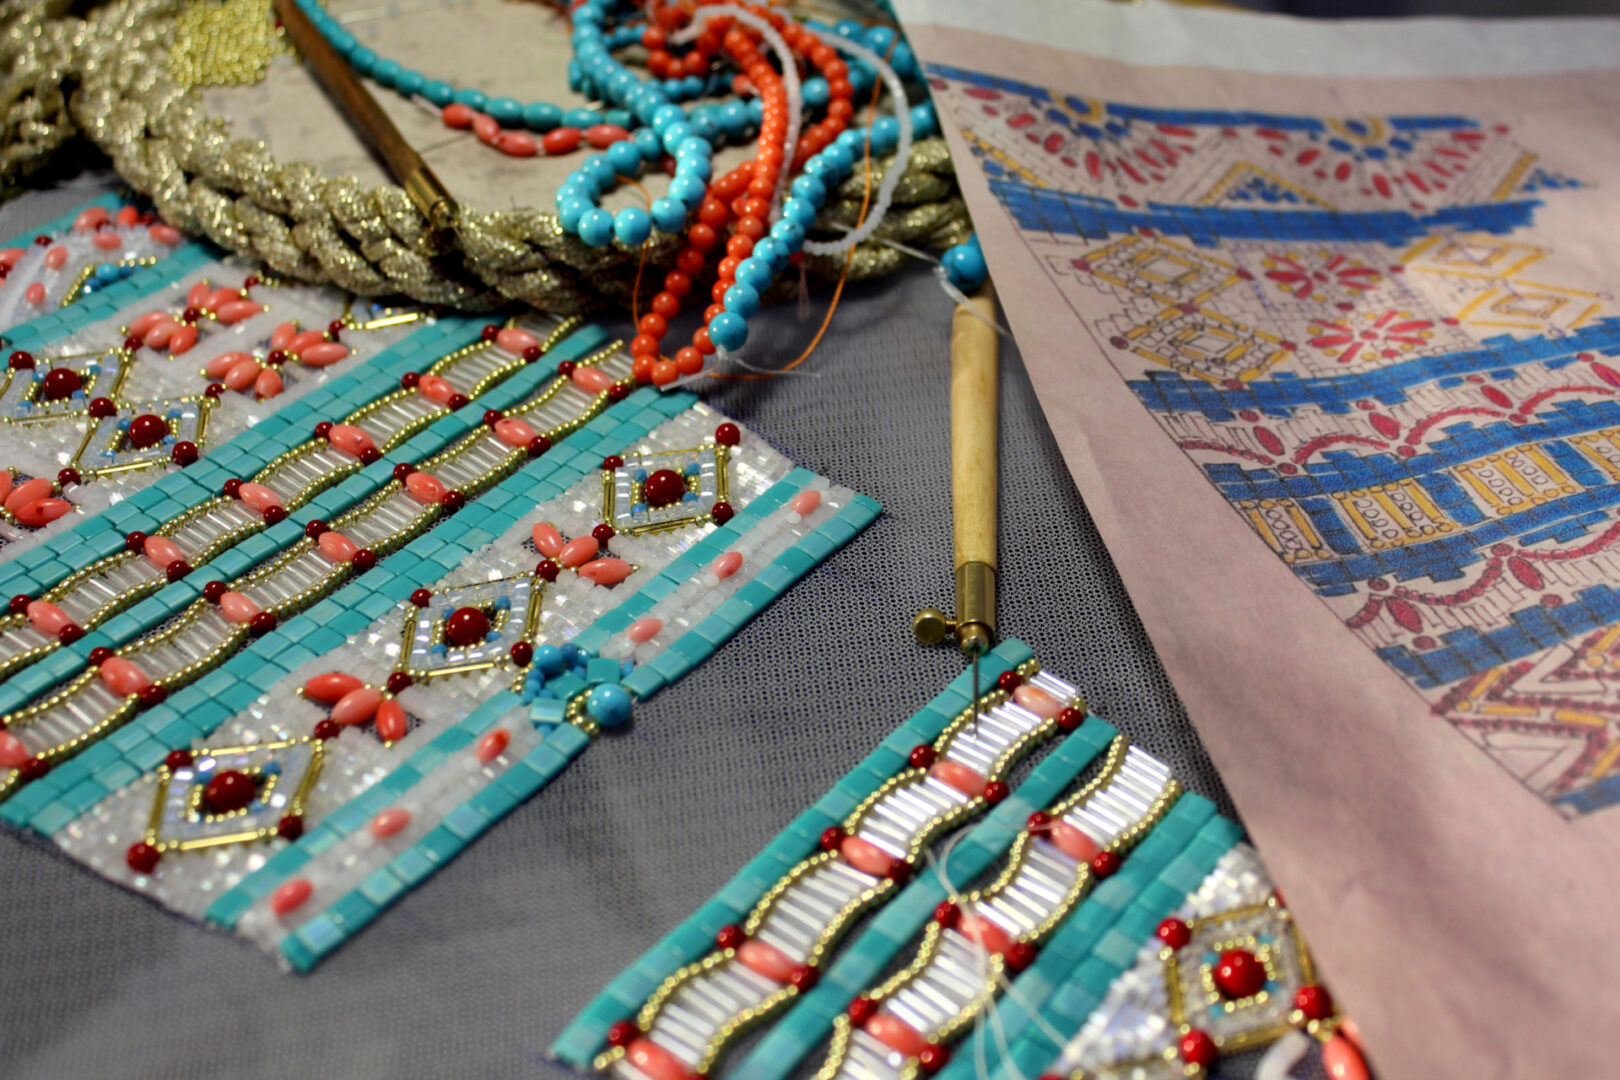 Курсы шитья, вышивки, вязания в Москве в учебном центре Мир шитья